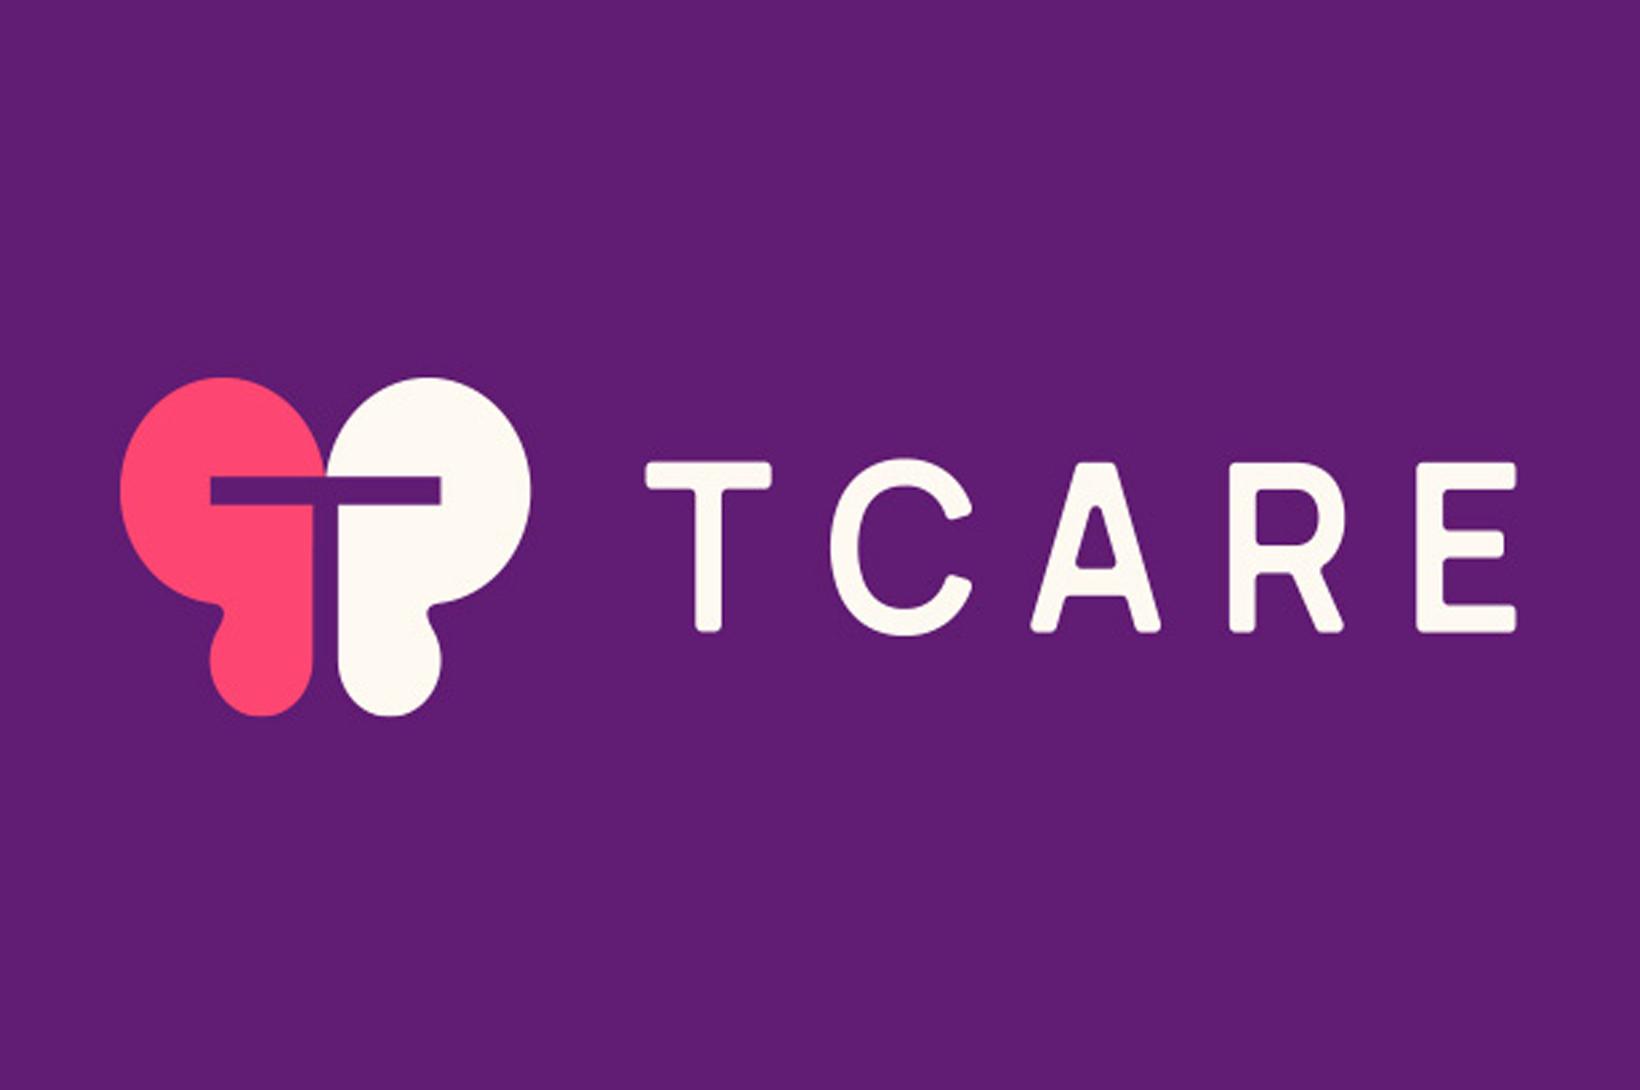 TCARE purple logo